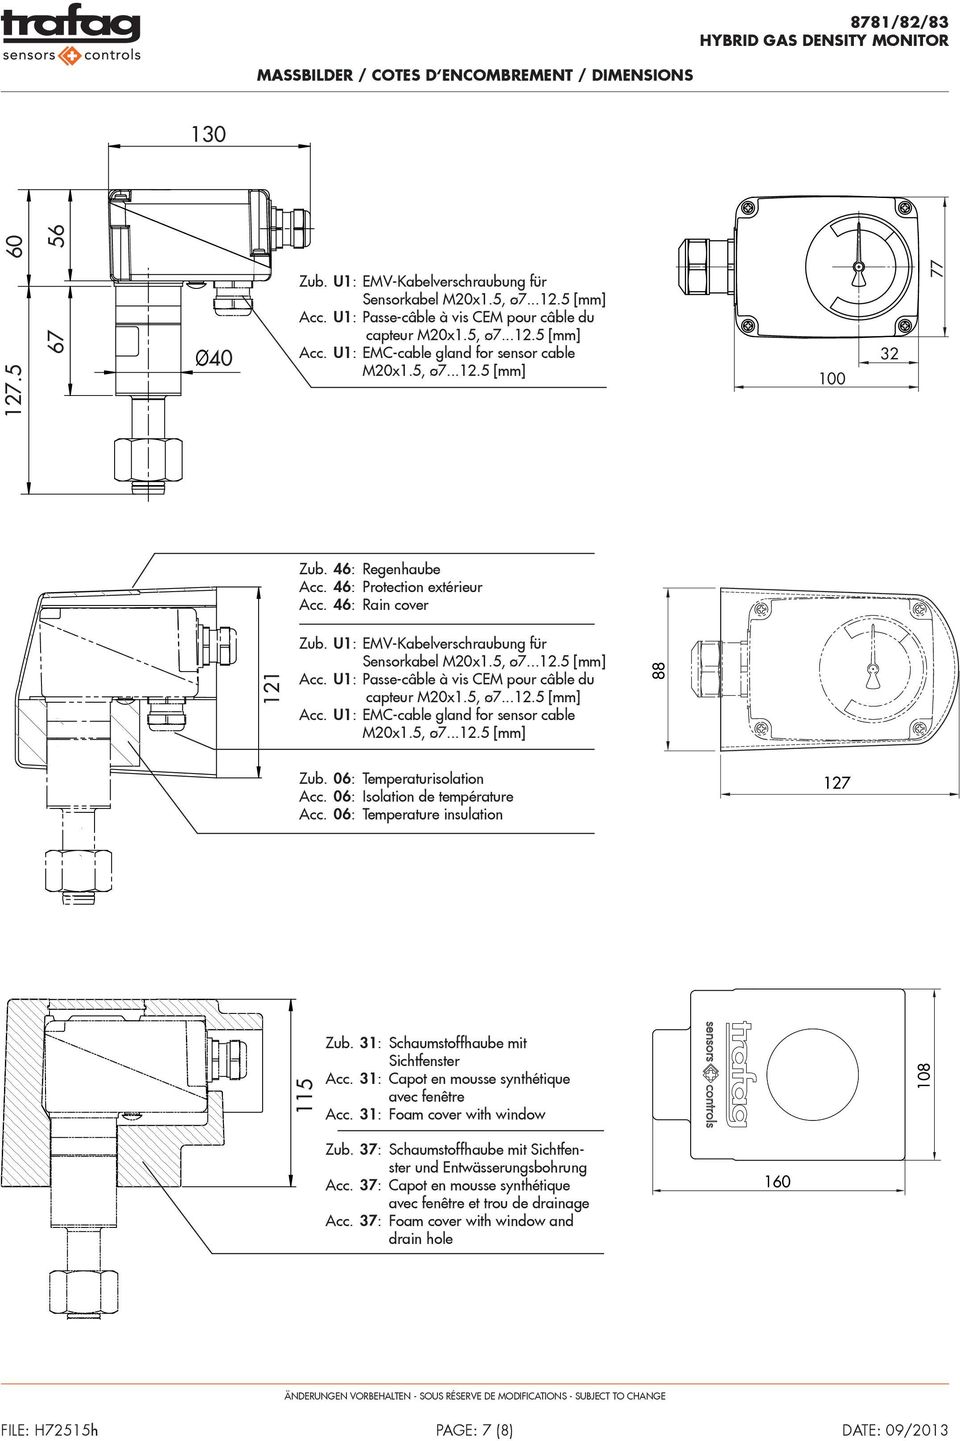 46: Protection extérieur Acc. 46: Rain cover 121 Zub. U1: EMV-Kabelverschraubung für Sensorkabel M20x1.5, ø7...12.5 [mm] Acc. U1: Passe-câble à vis CEM pour câble du capteur M20x1.5, ø7...12.5 [mm] Acc. U1: EMC-cable gland for sensor cable M20x1.